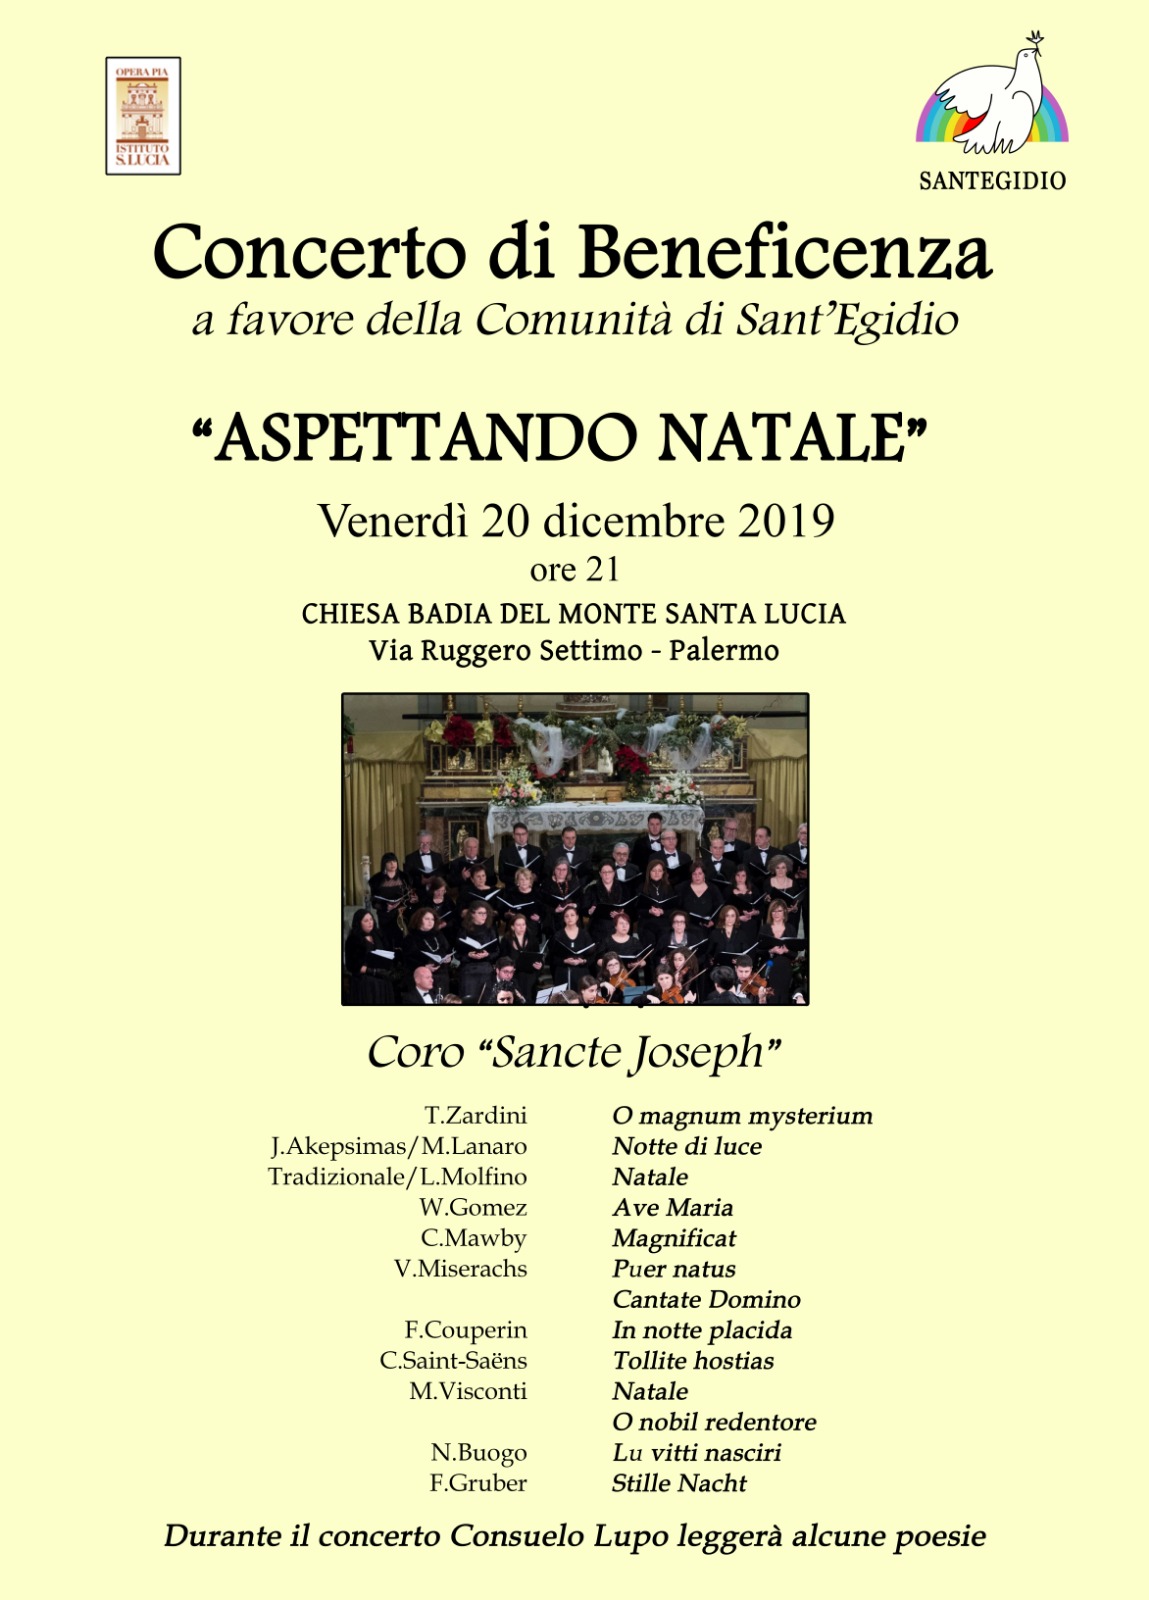 Poesie Di Natale In Siciliano.Sant Egidio E Solidarieta Il Concerto Di Natale Live Sicilia